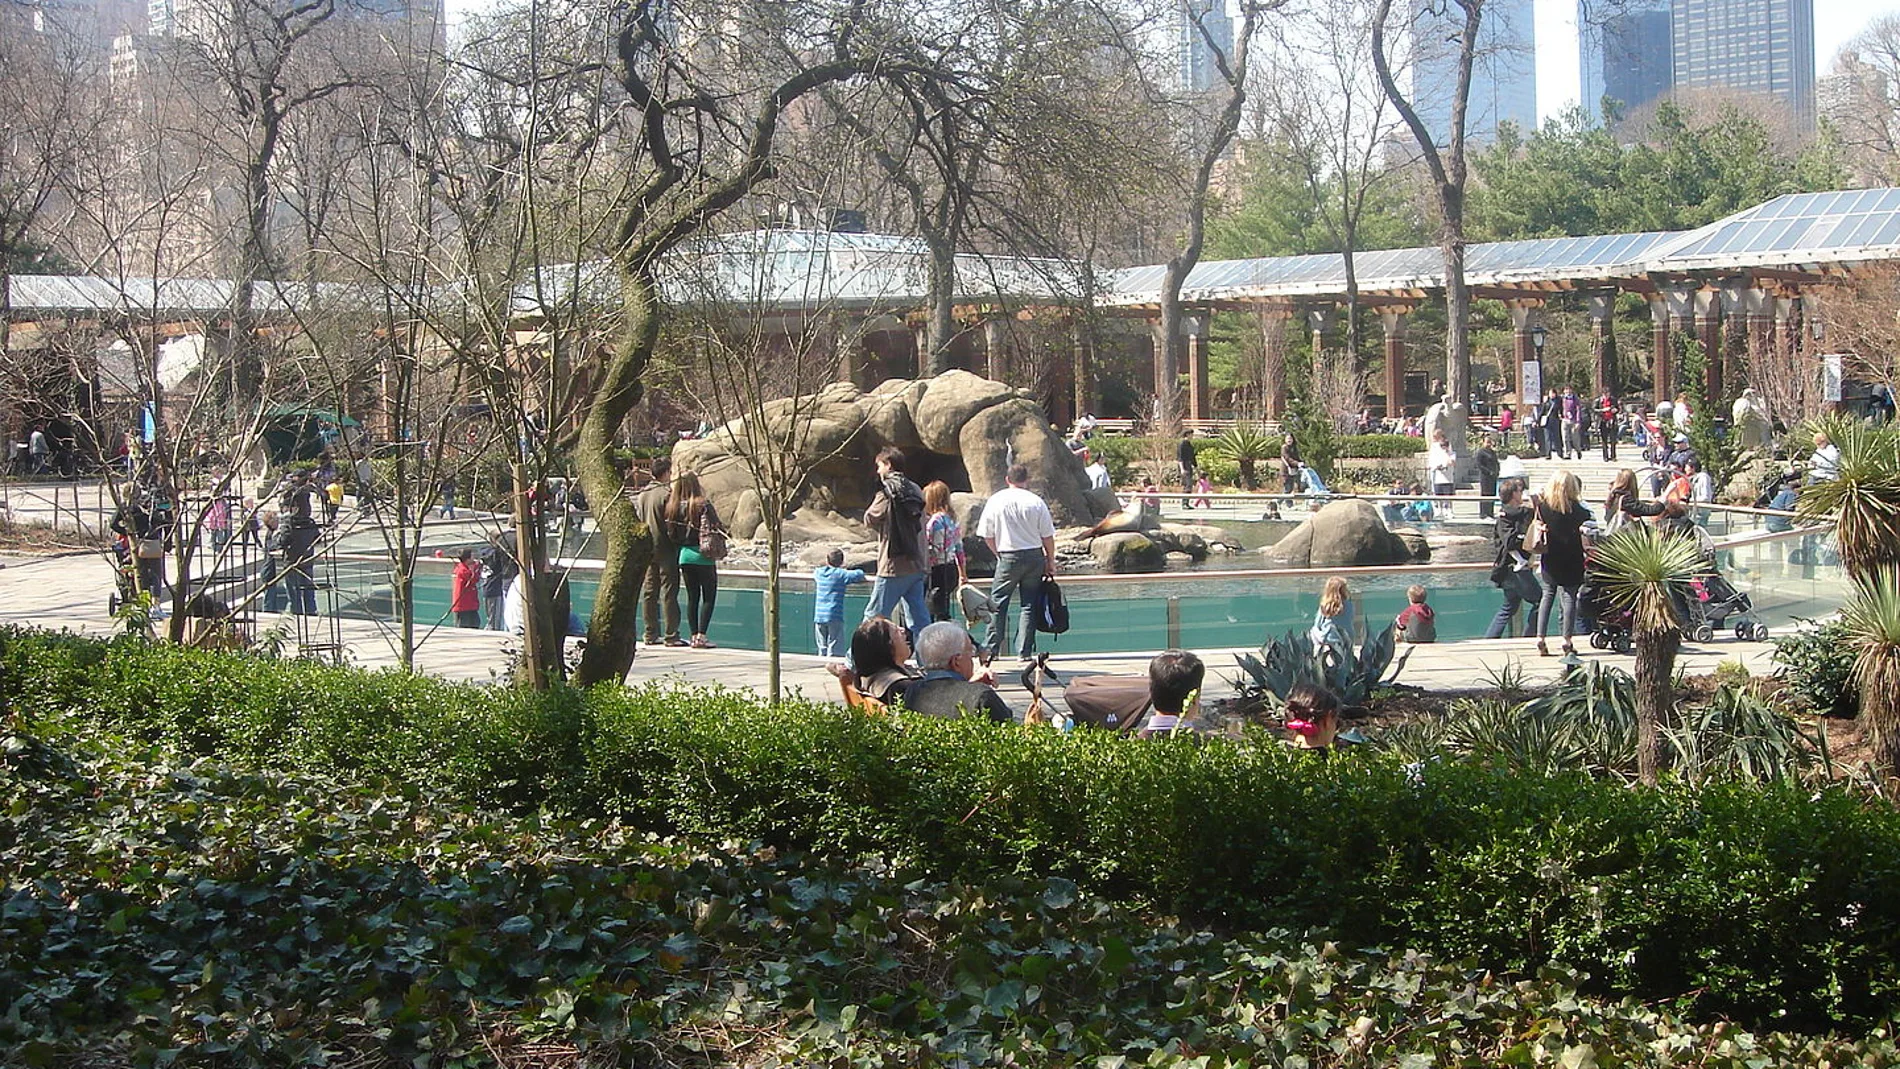 Una imagen actual del zoo de Central Park